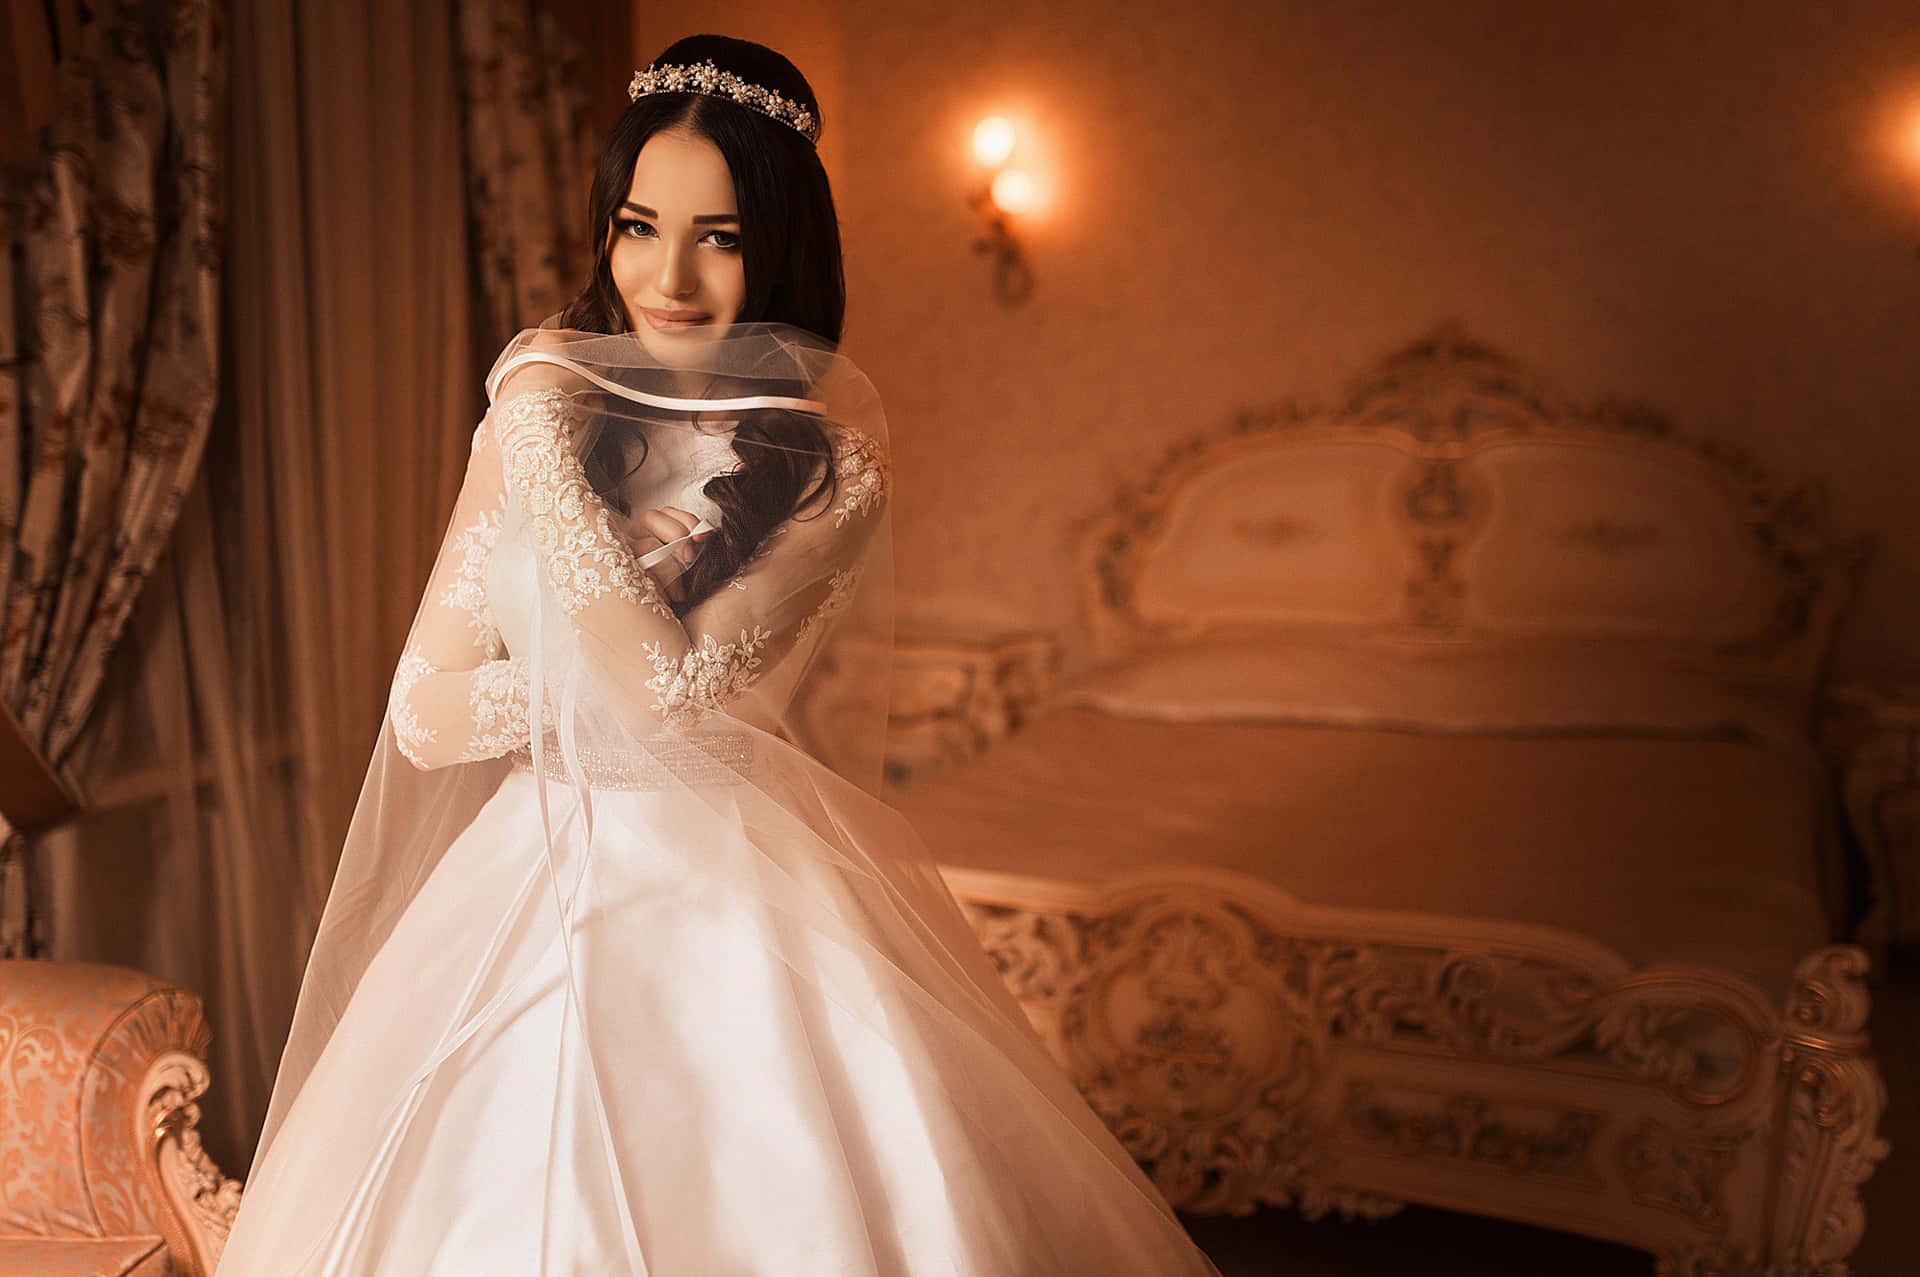 Elegant White Lace Wedding Dress